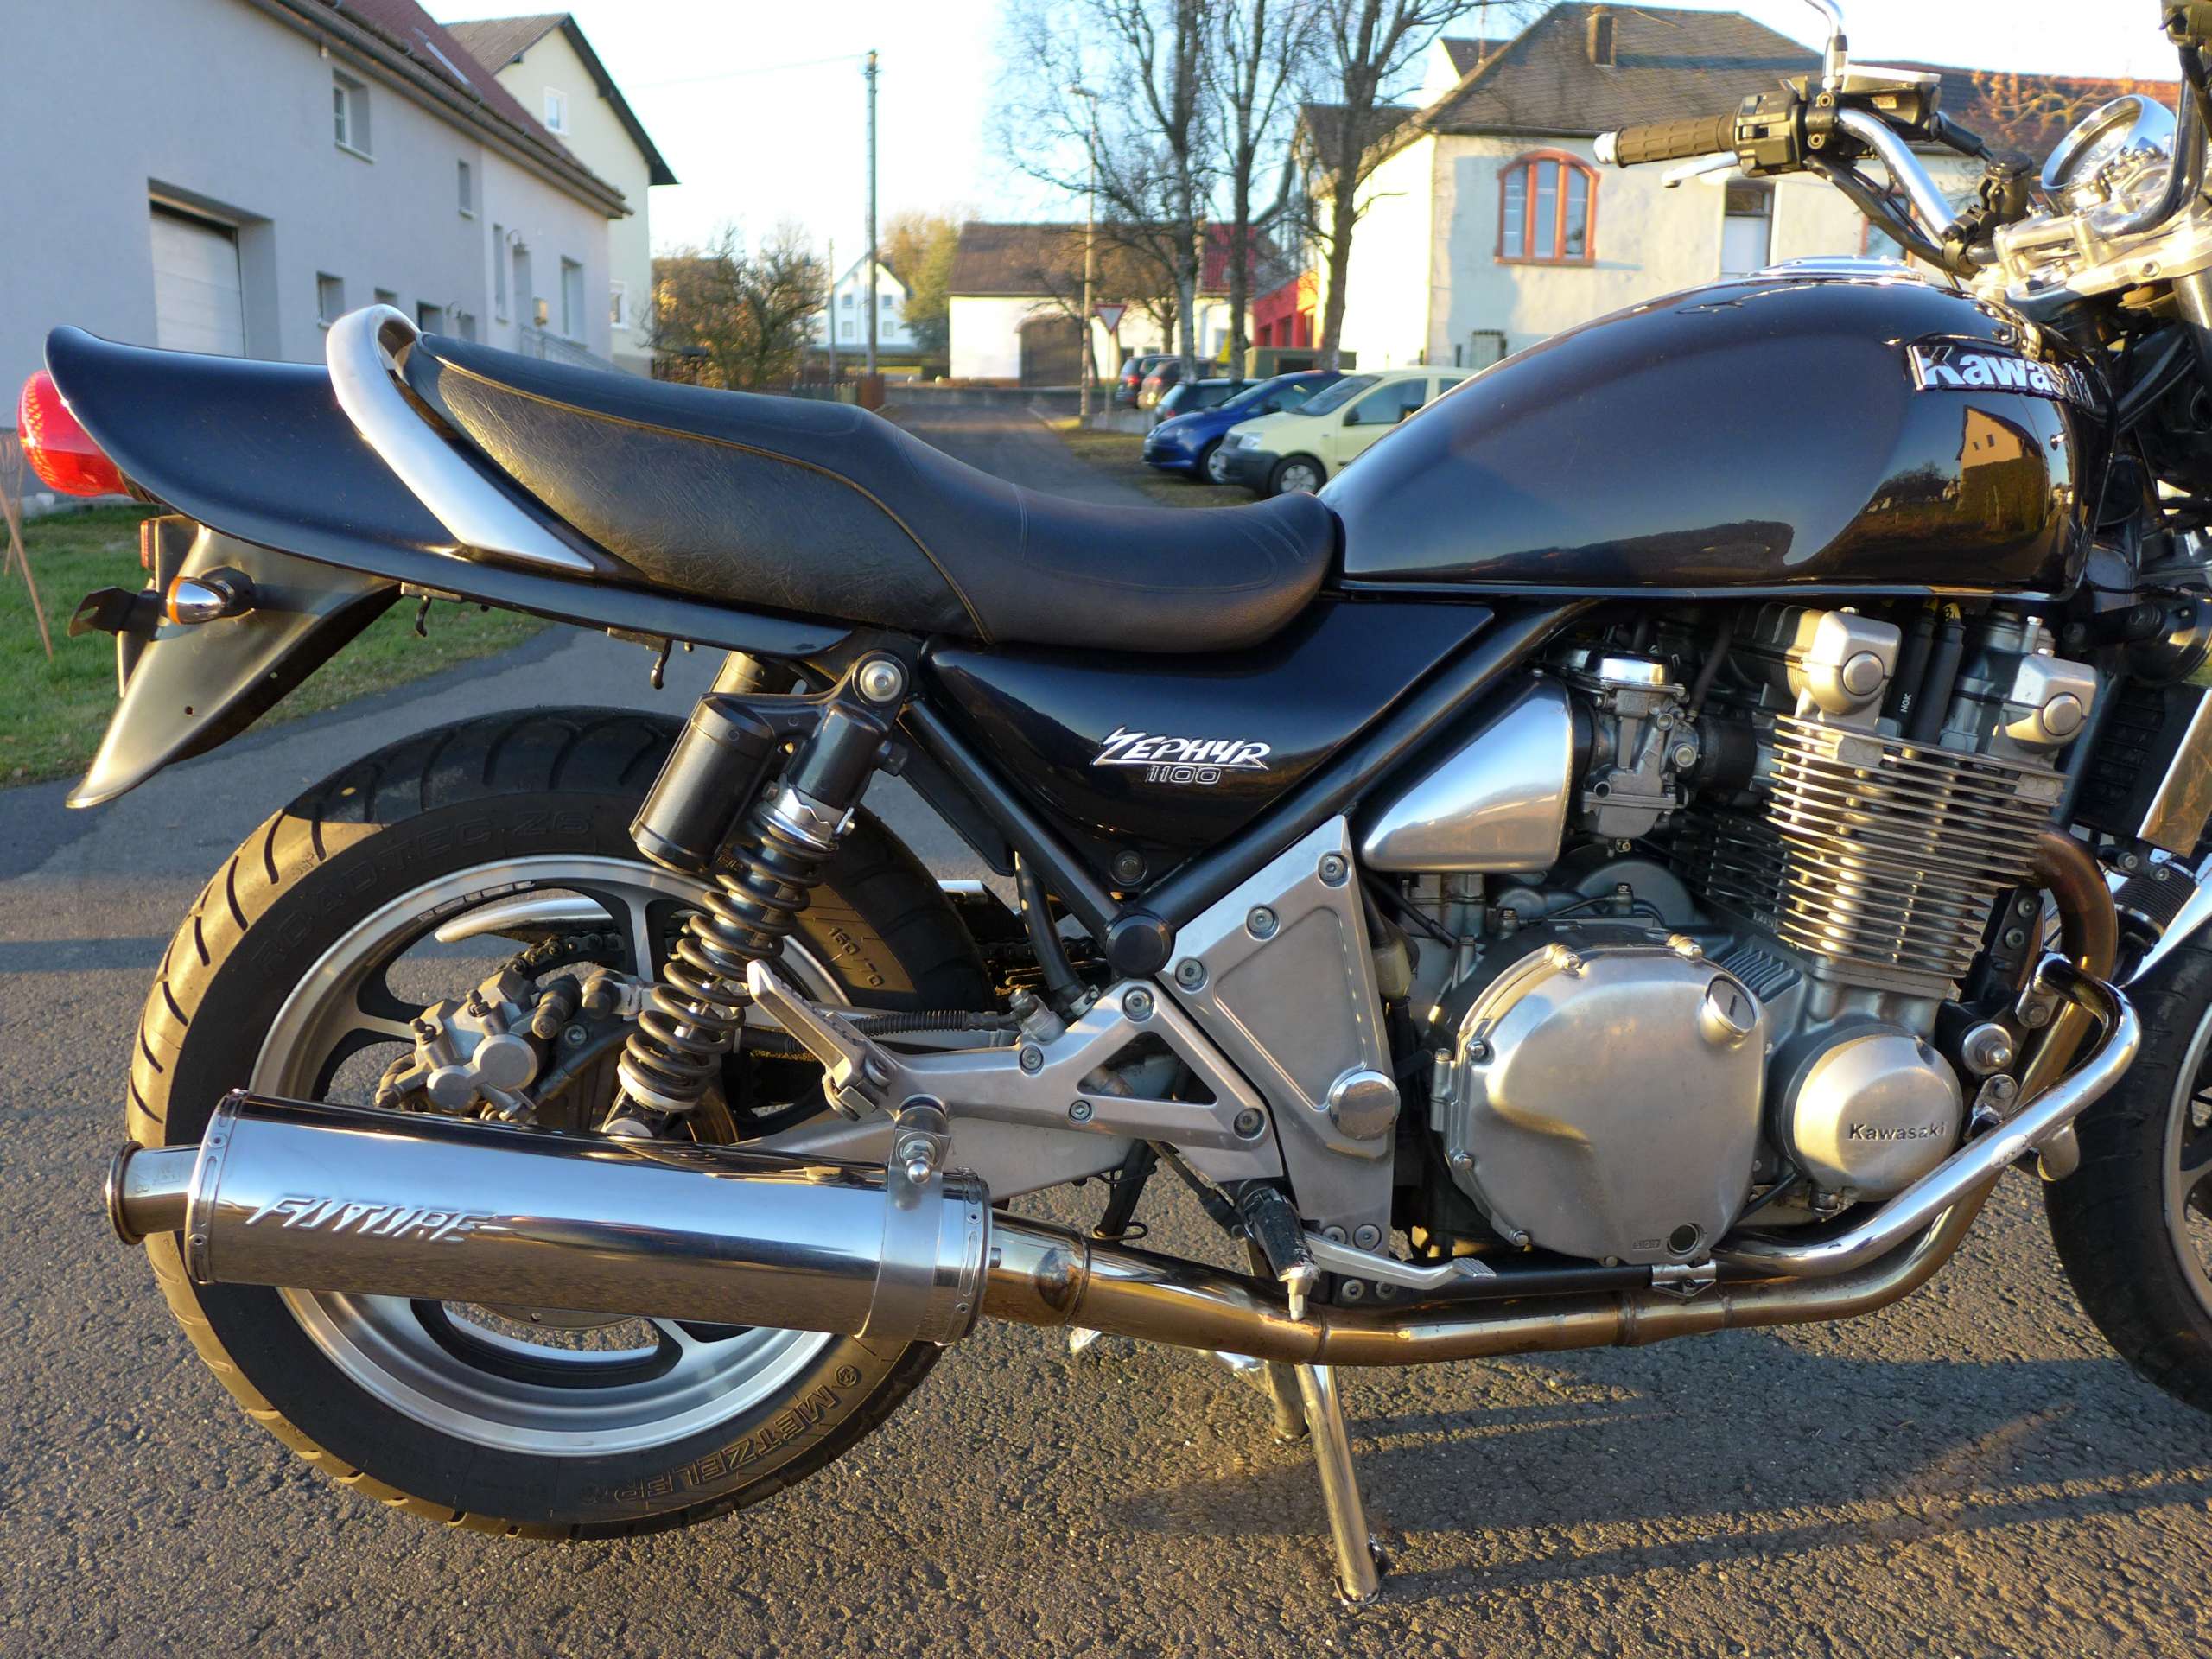 Мотоцикл kawasaki zephyr 1100: технические характеристики, отзывы